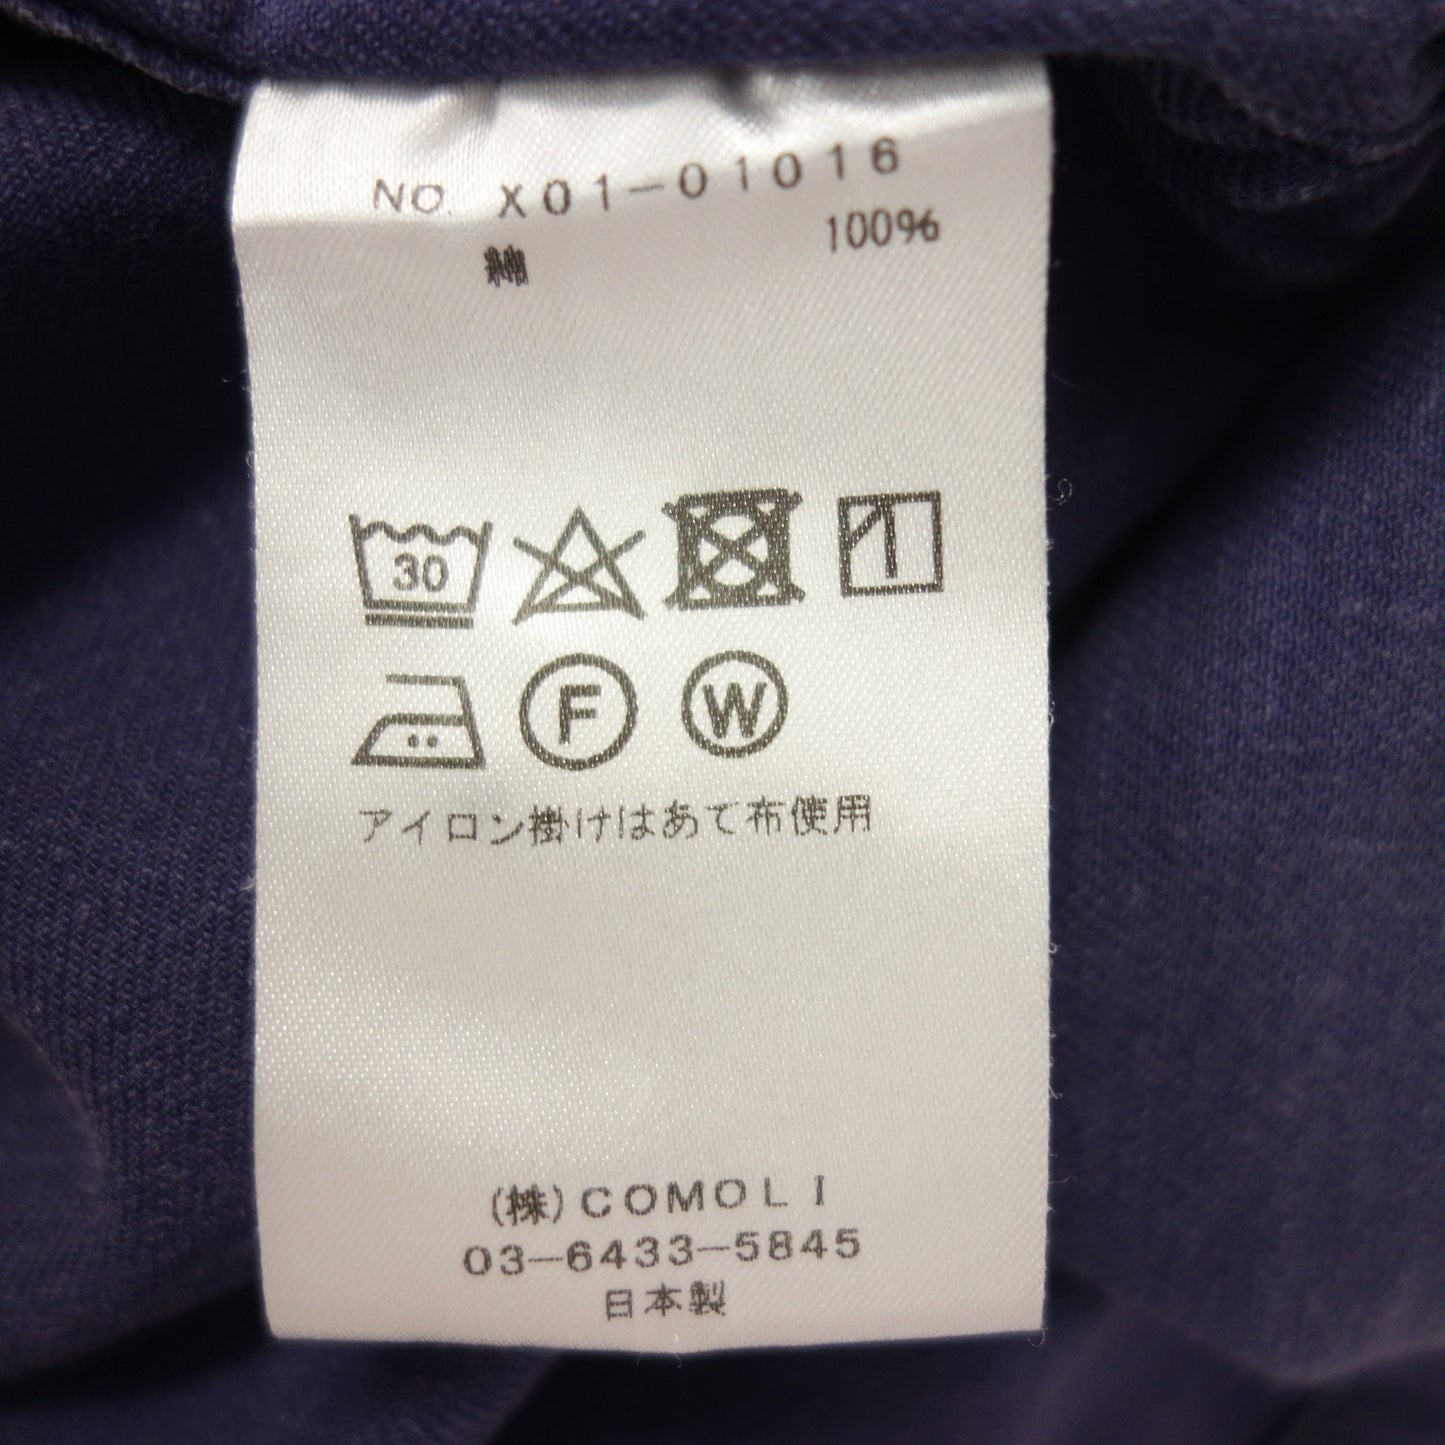 新品同様◆コモリ コットンドリル ワークジャケット 23SS X01-01016 サイズ2 メンズ 青系 COMOLI【AFB26】